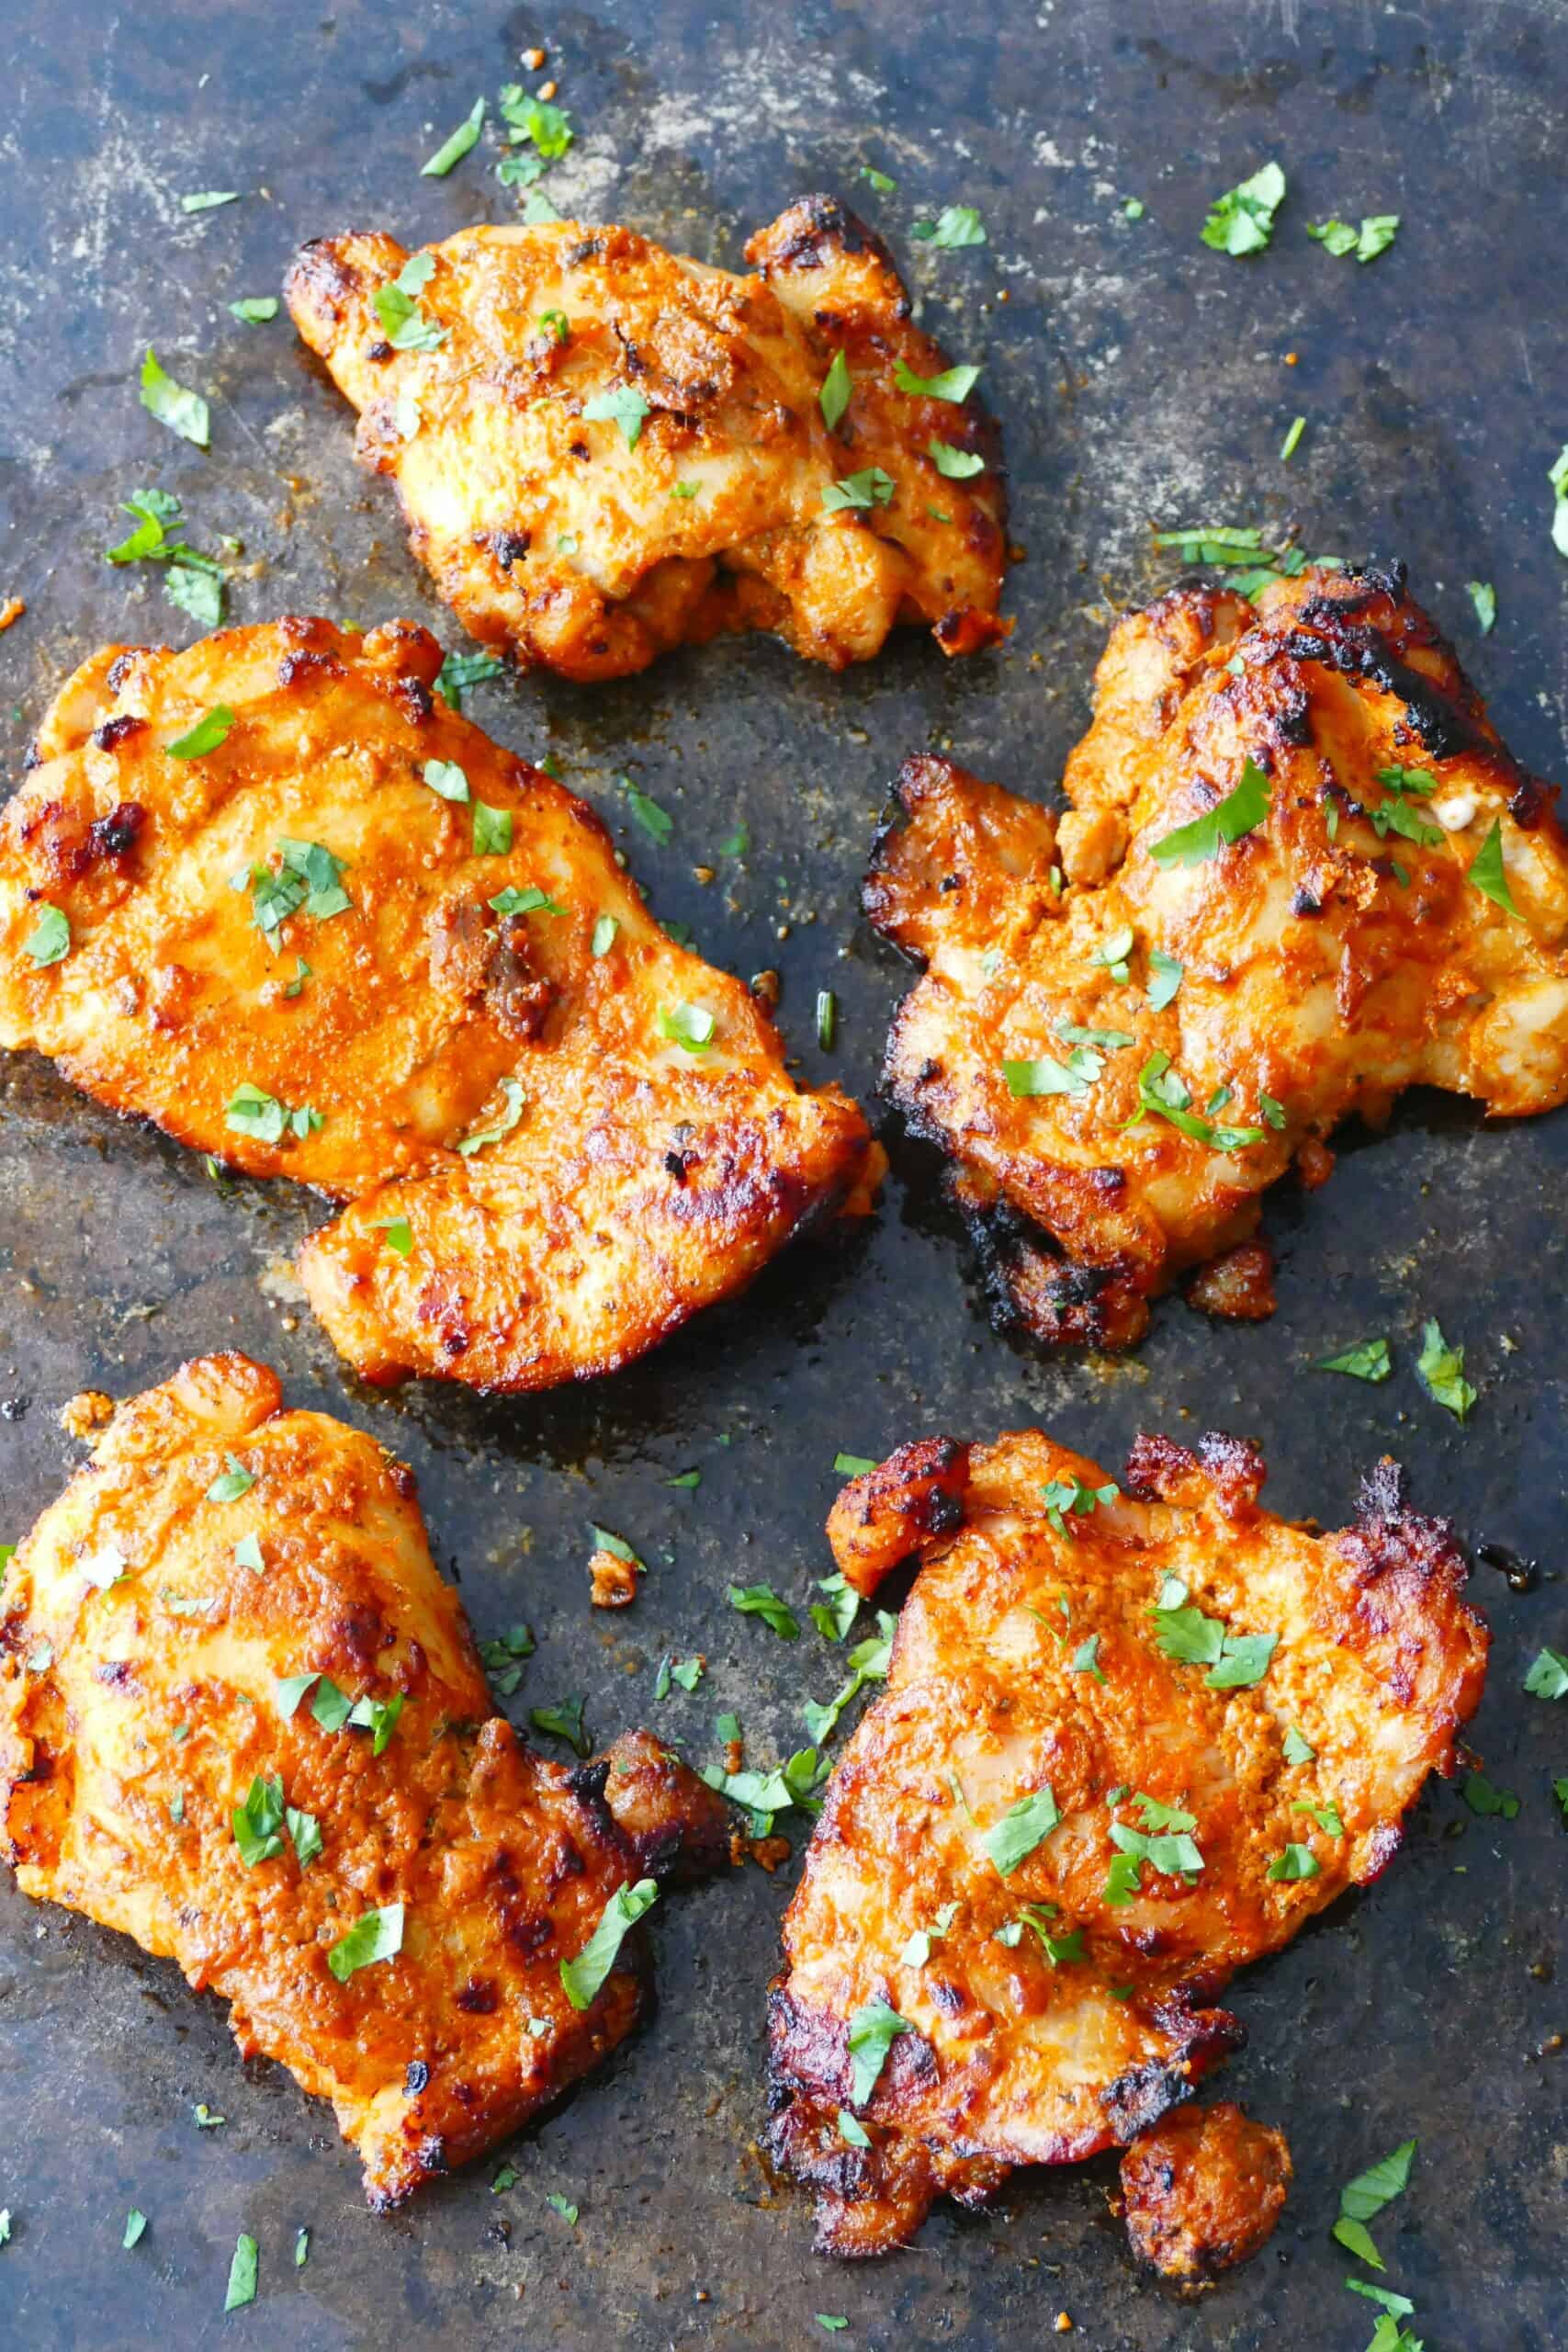 Air fryer tandoori chicken with charred bits on dark surface with cilantro garnish